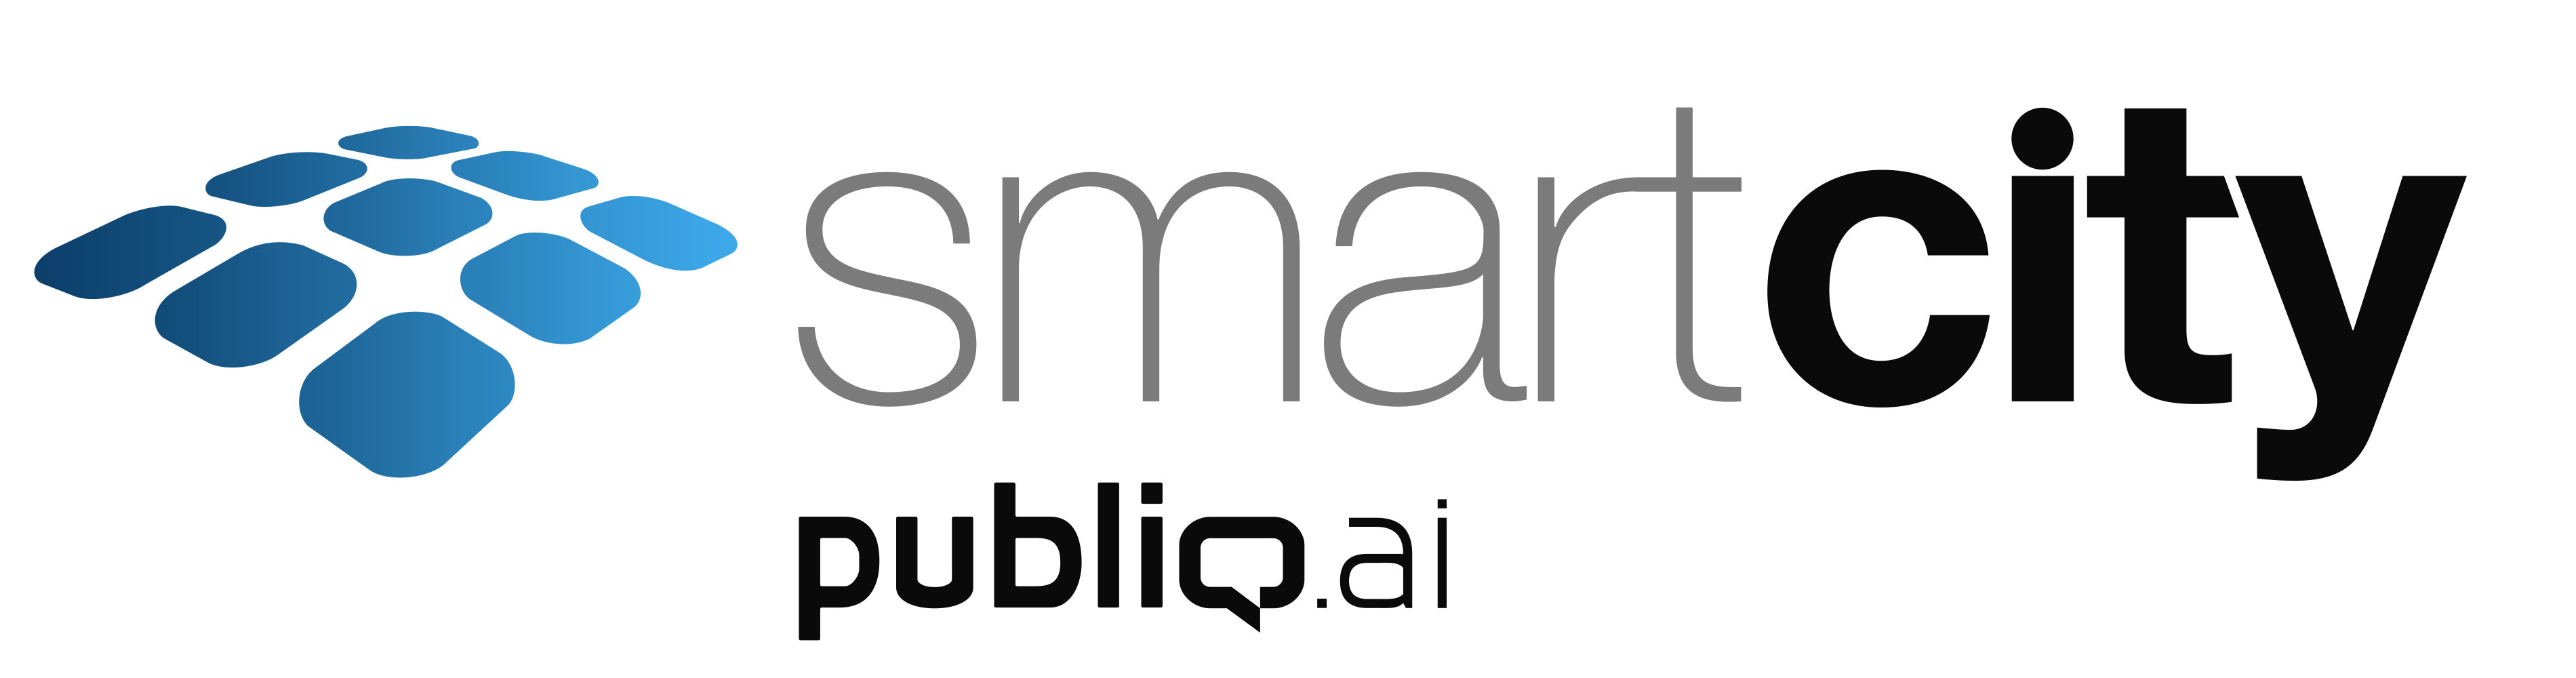 SmartCity-Isologo-PubliQ-fondo-blanco